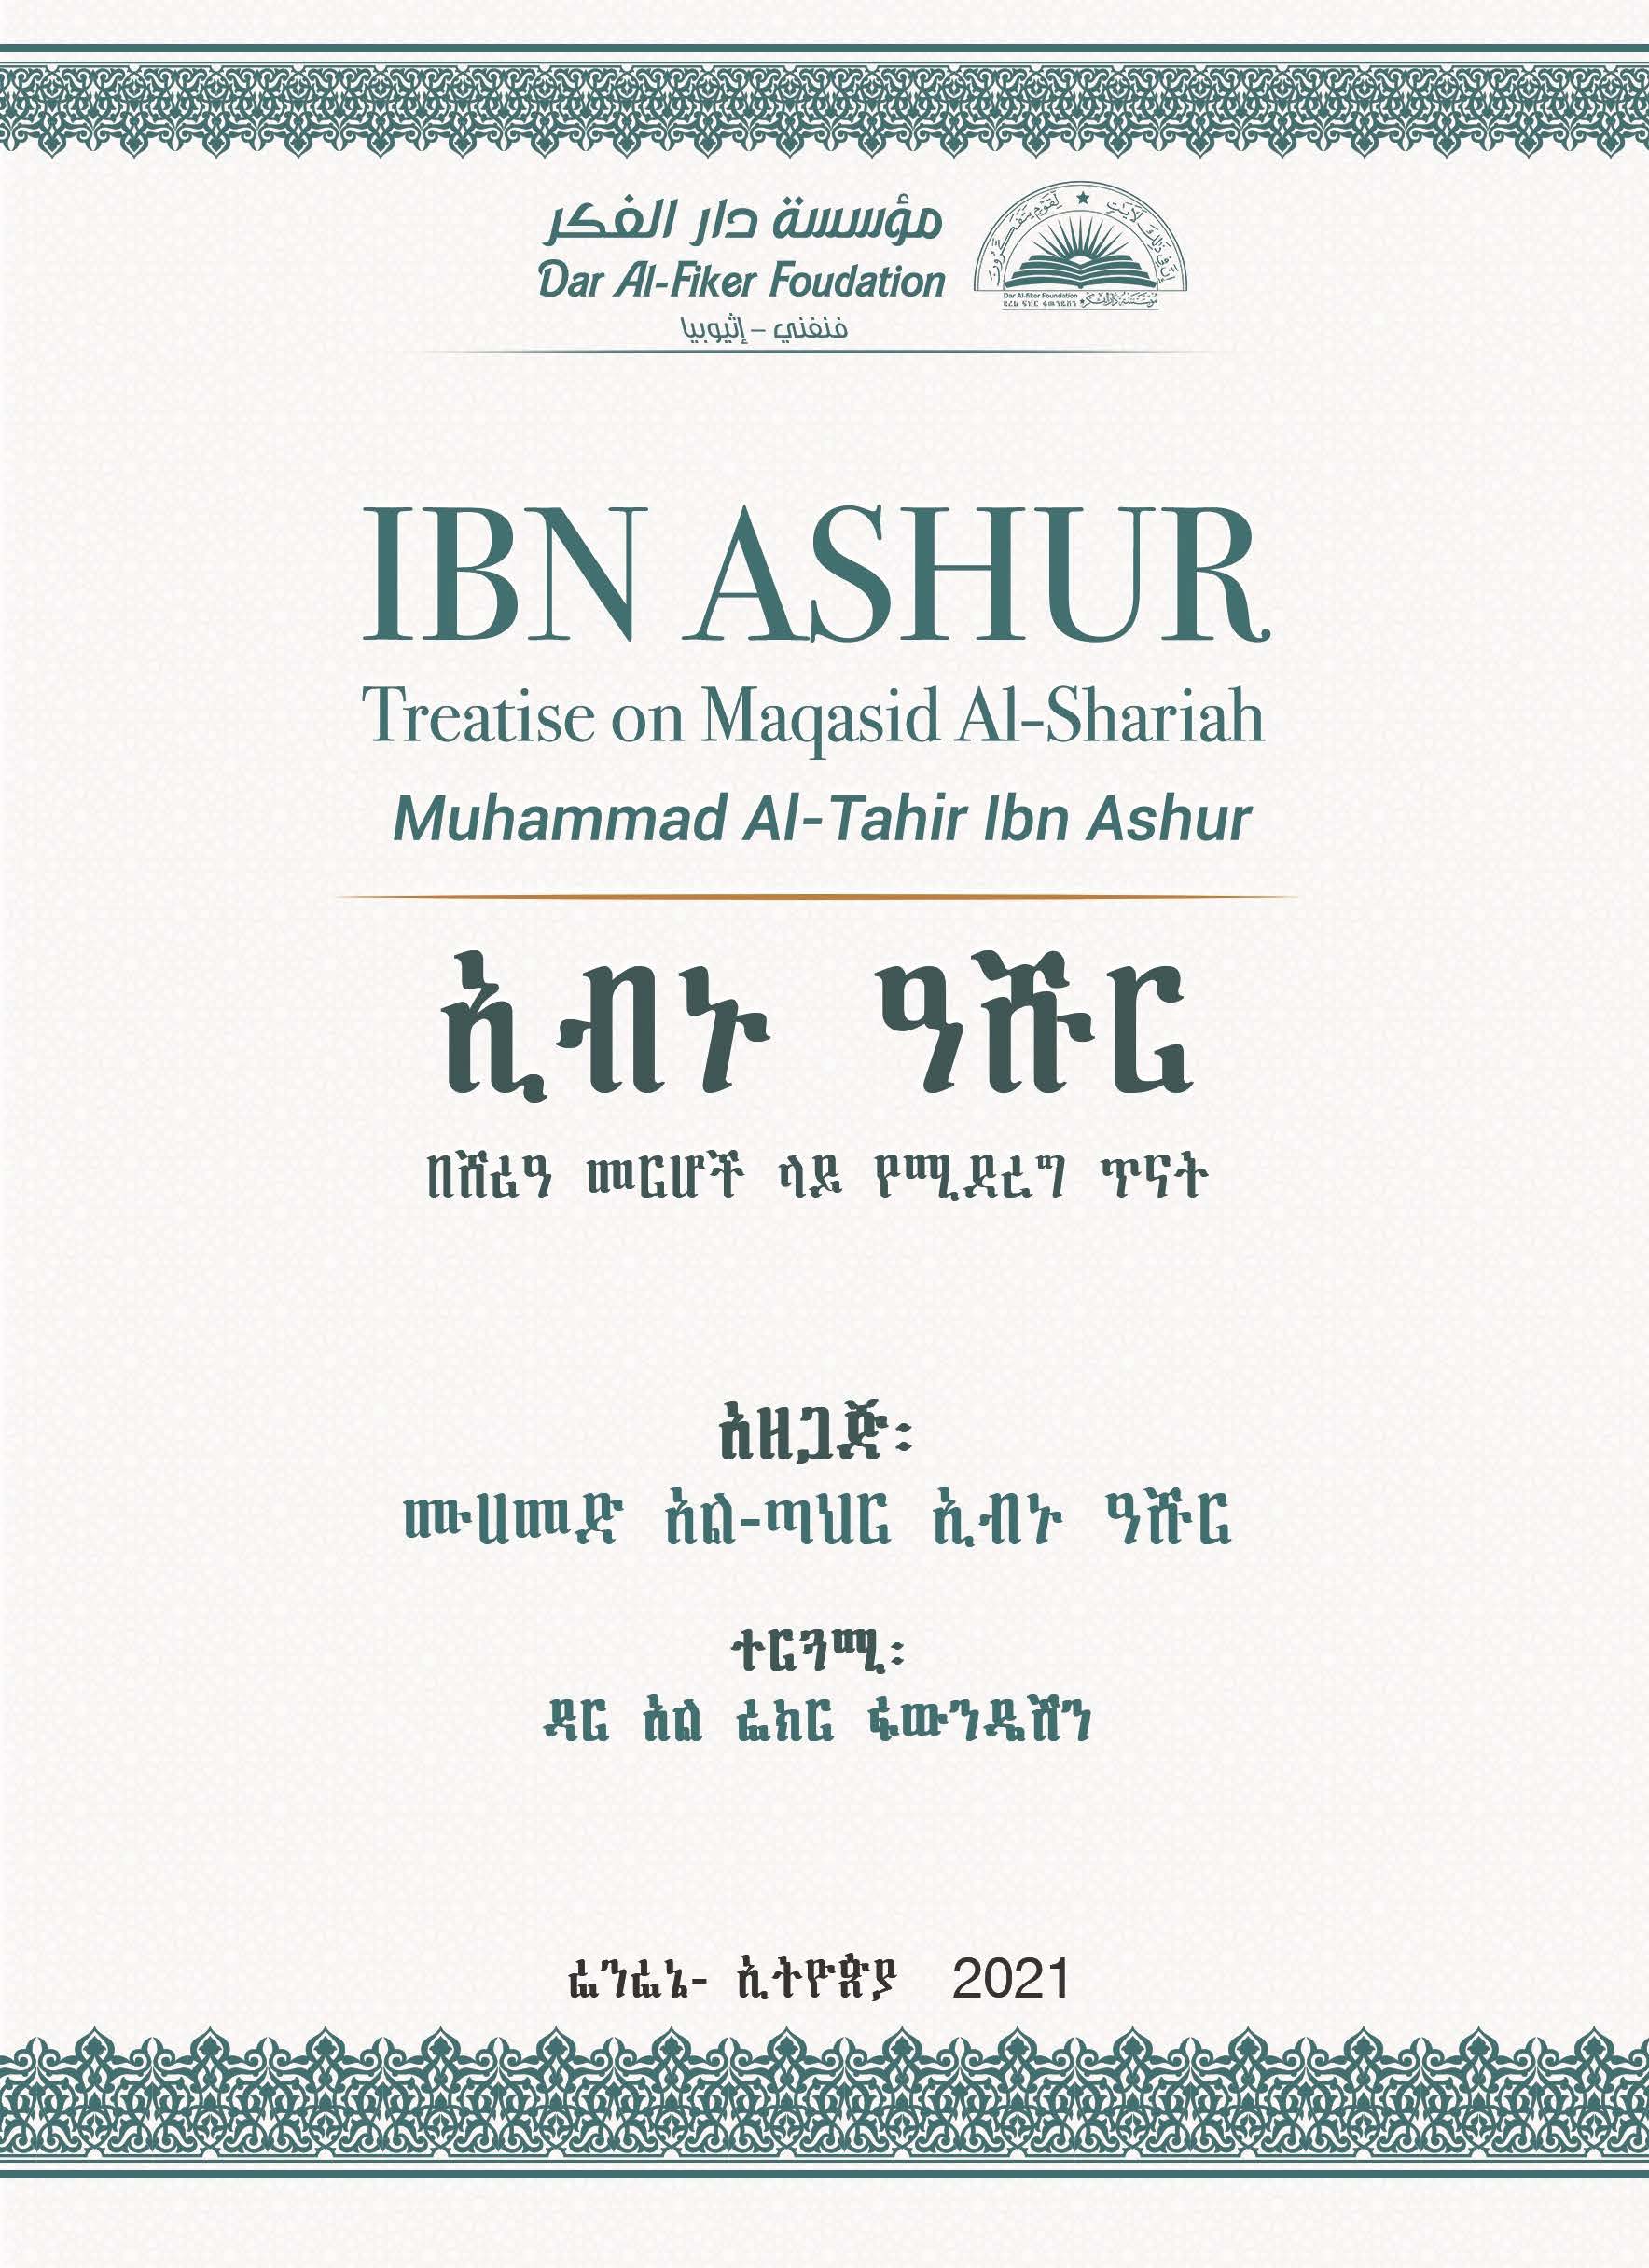 Amharic: ኢብኑ ዓሹር በሸሪዓ መርሆች ላይ የሚደረግ ጥናት (Ibn Ashur: Treatise on Maqasid Al-Shariah)